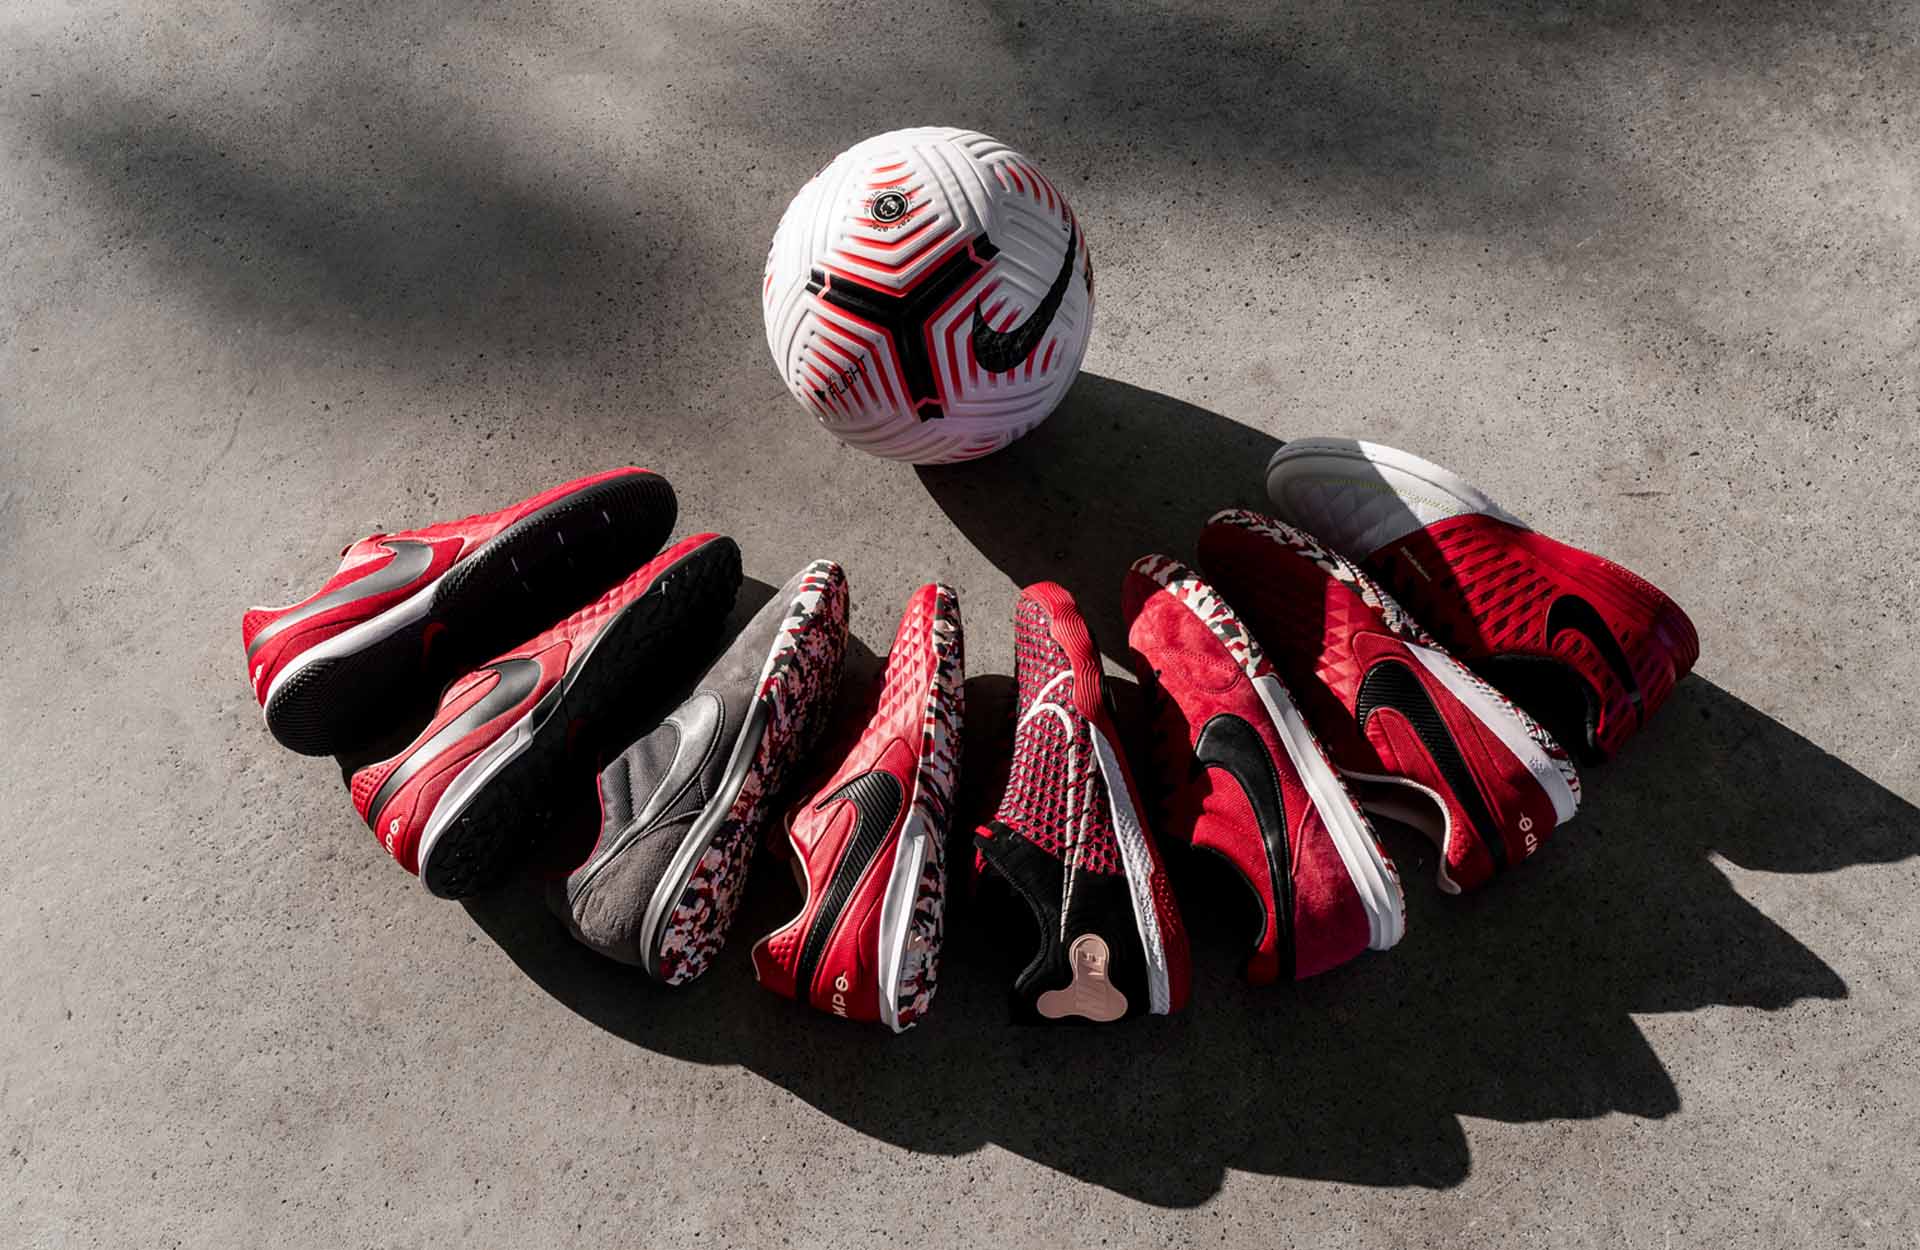 Phối màu của bộ sưu tập Nike "Cardinal Red/White" đầy quyến rũ